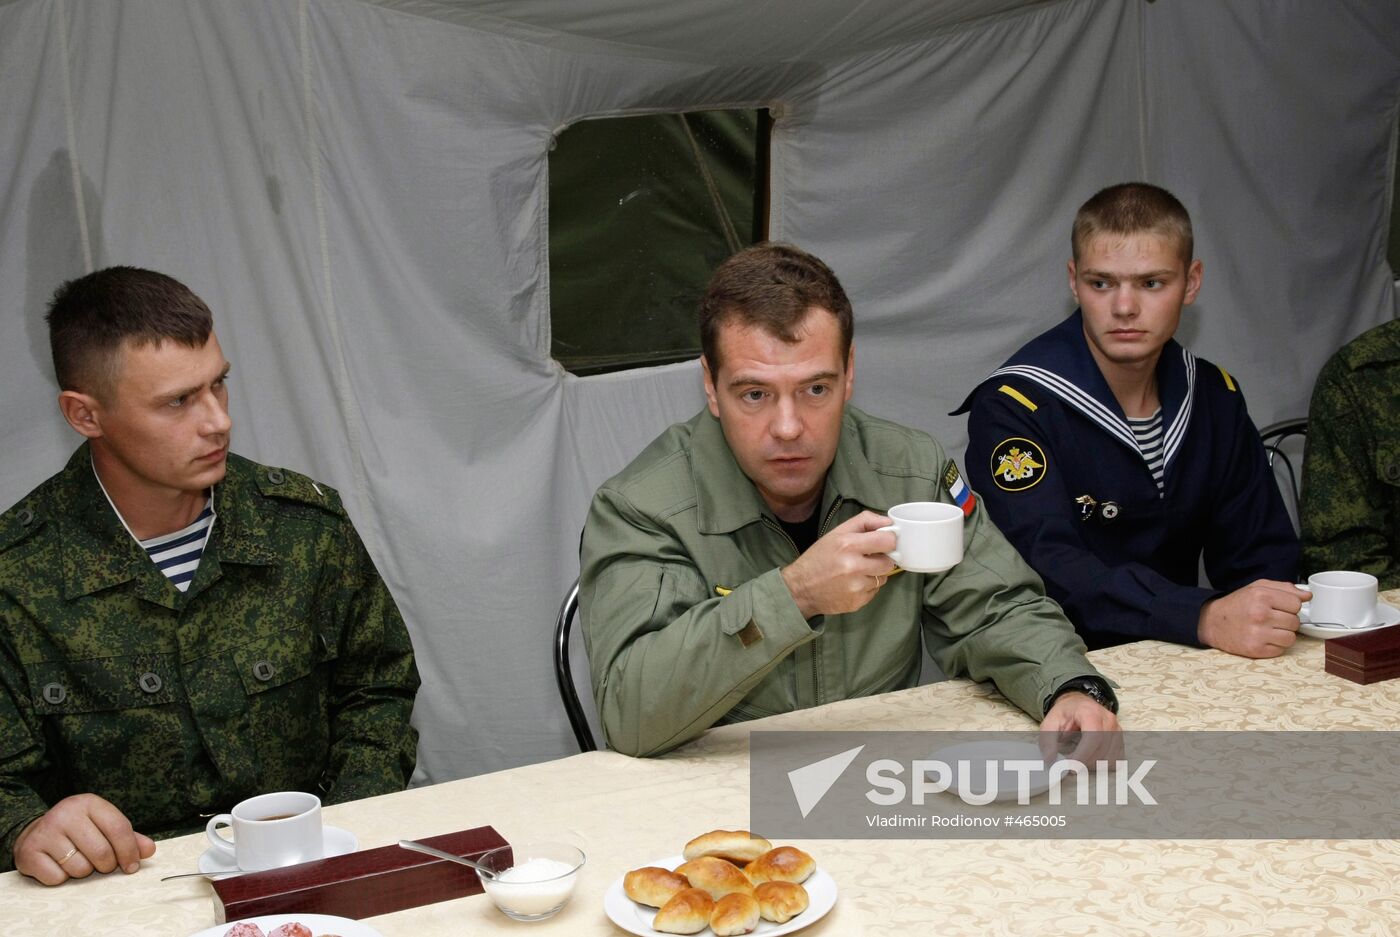 President Dmitry Medvedev visits Kaliningrad Region